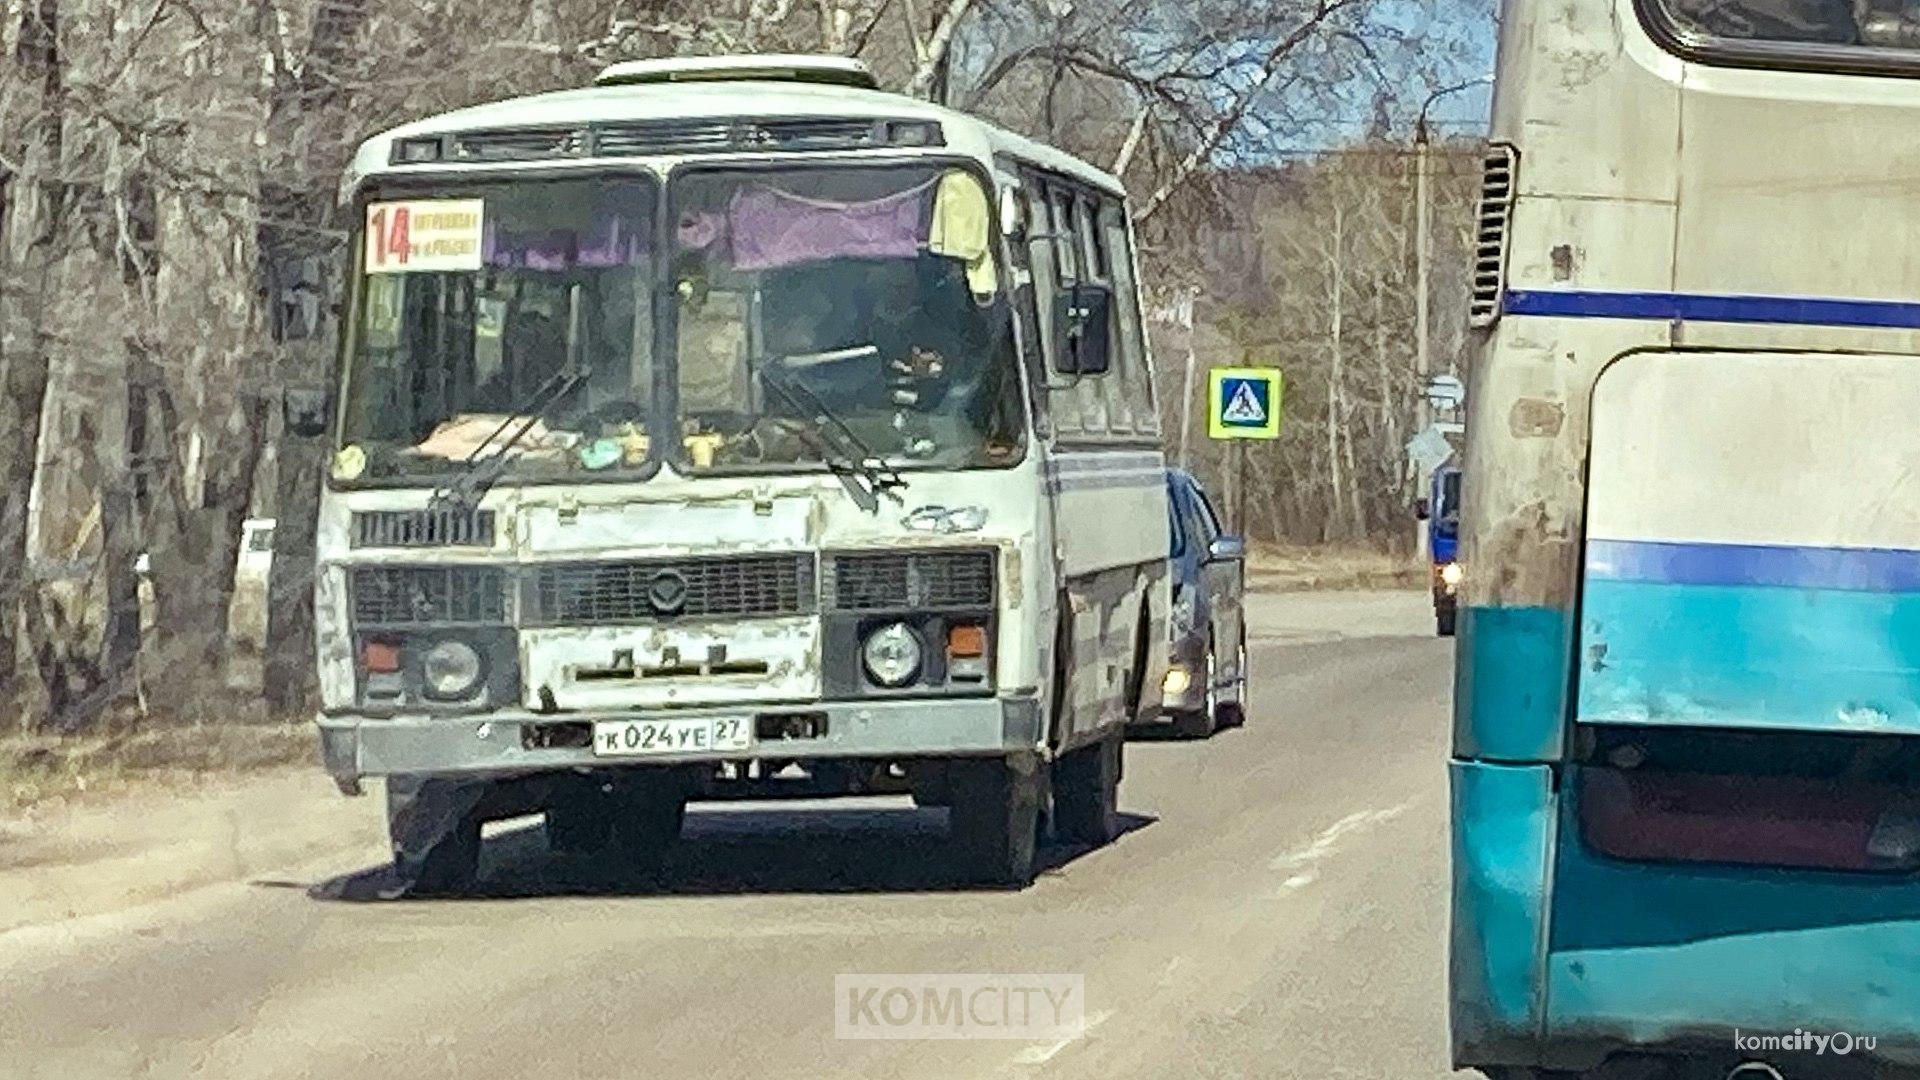 В Комсомольске ничего нового — революционеры опять меняют маршруты автобусов